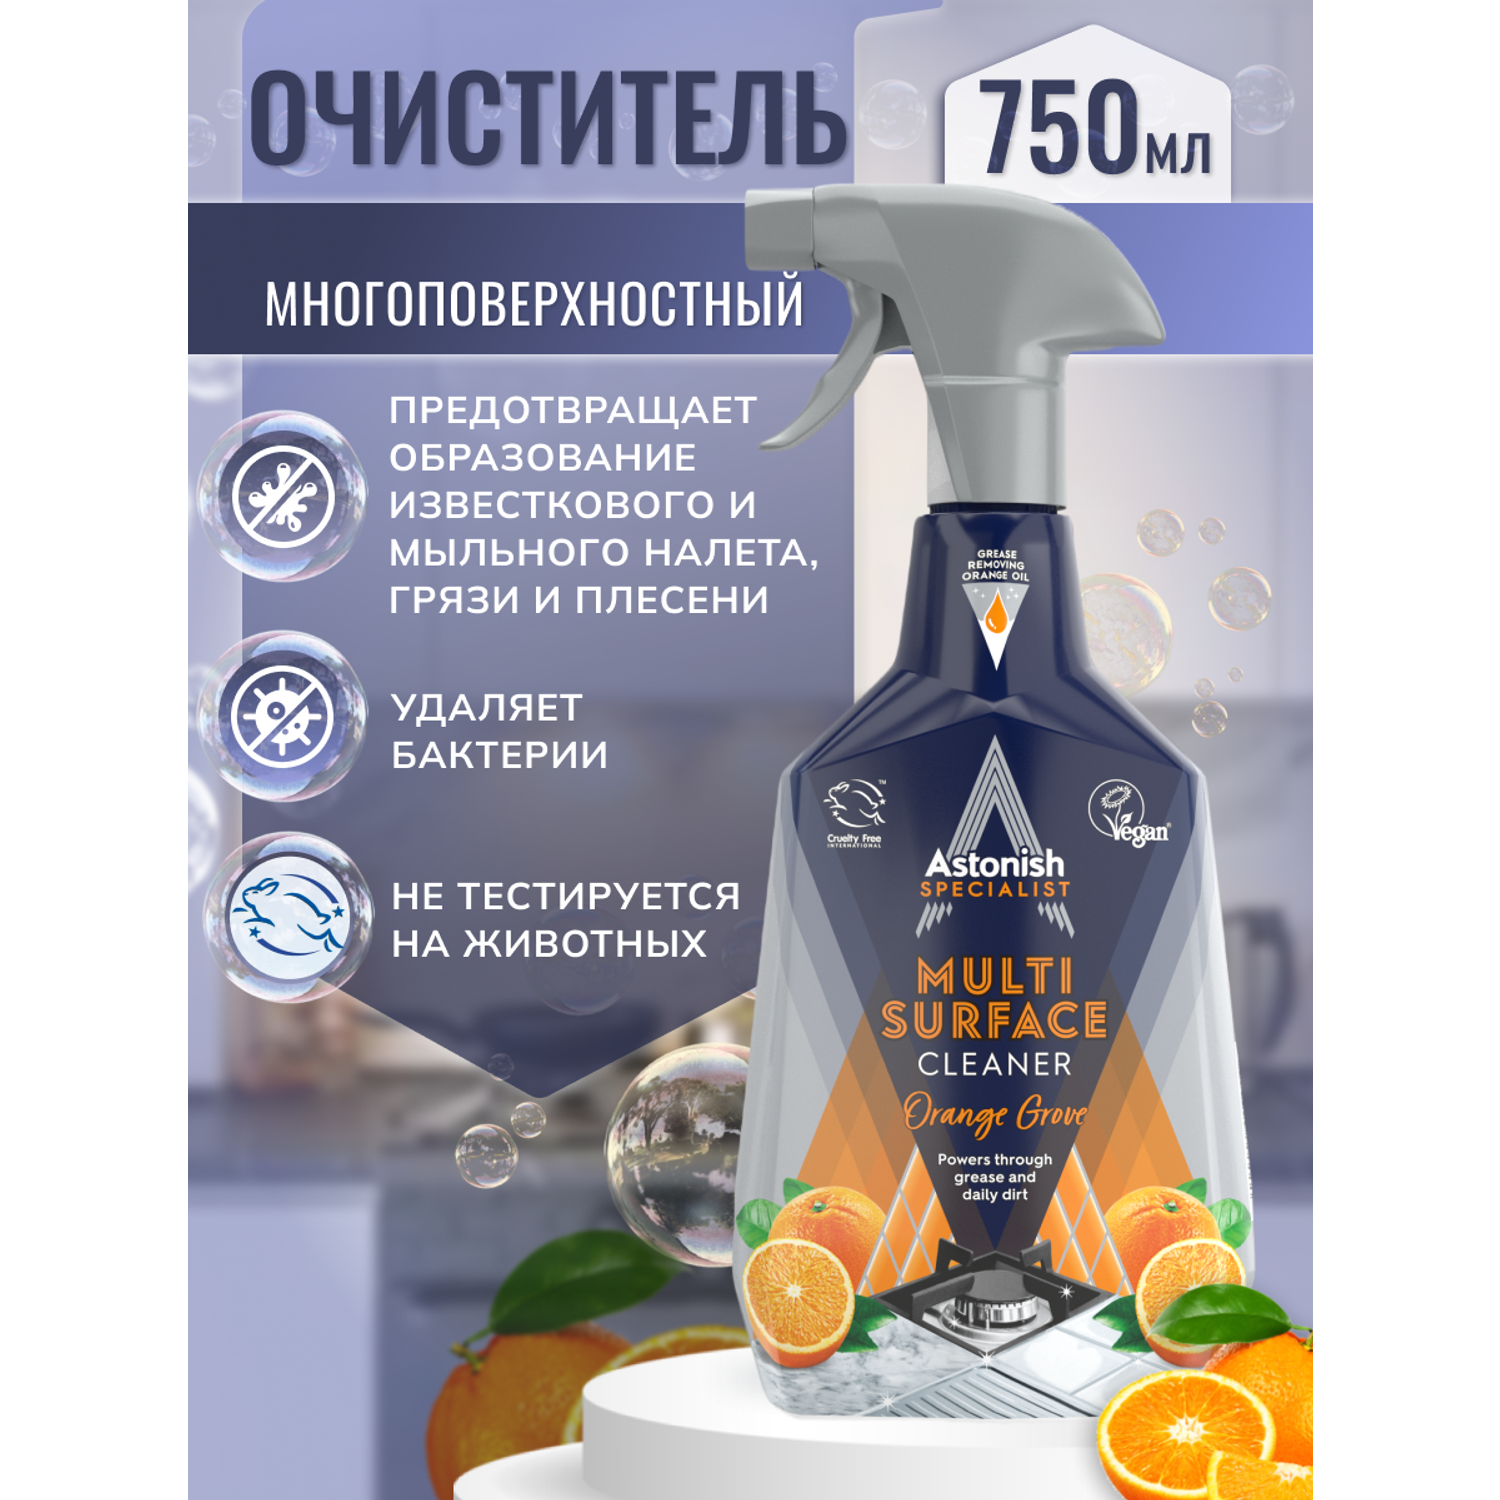 Многофункциональный очиститель Astonish На основе натурального апельсинового масла Specialist Multi-Surface Cleaner Orange Grove - фото 2